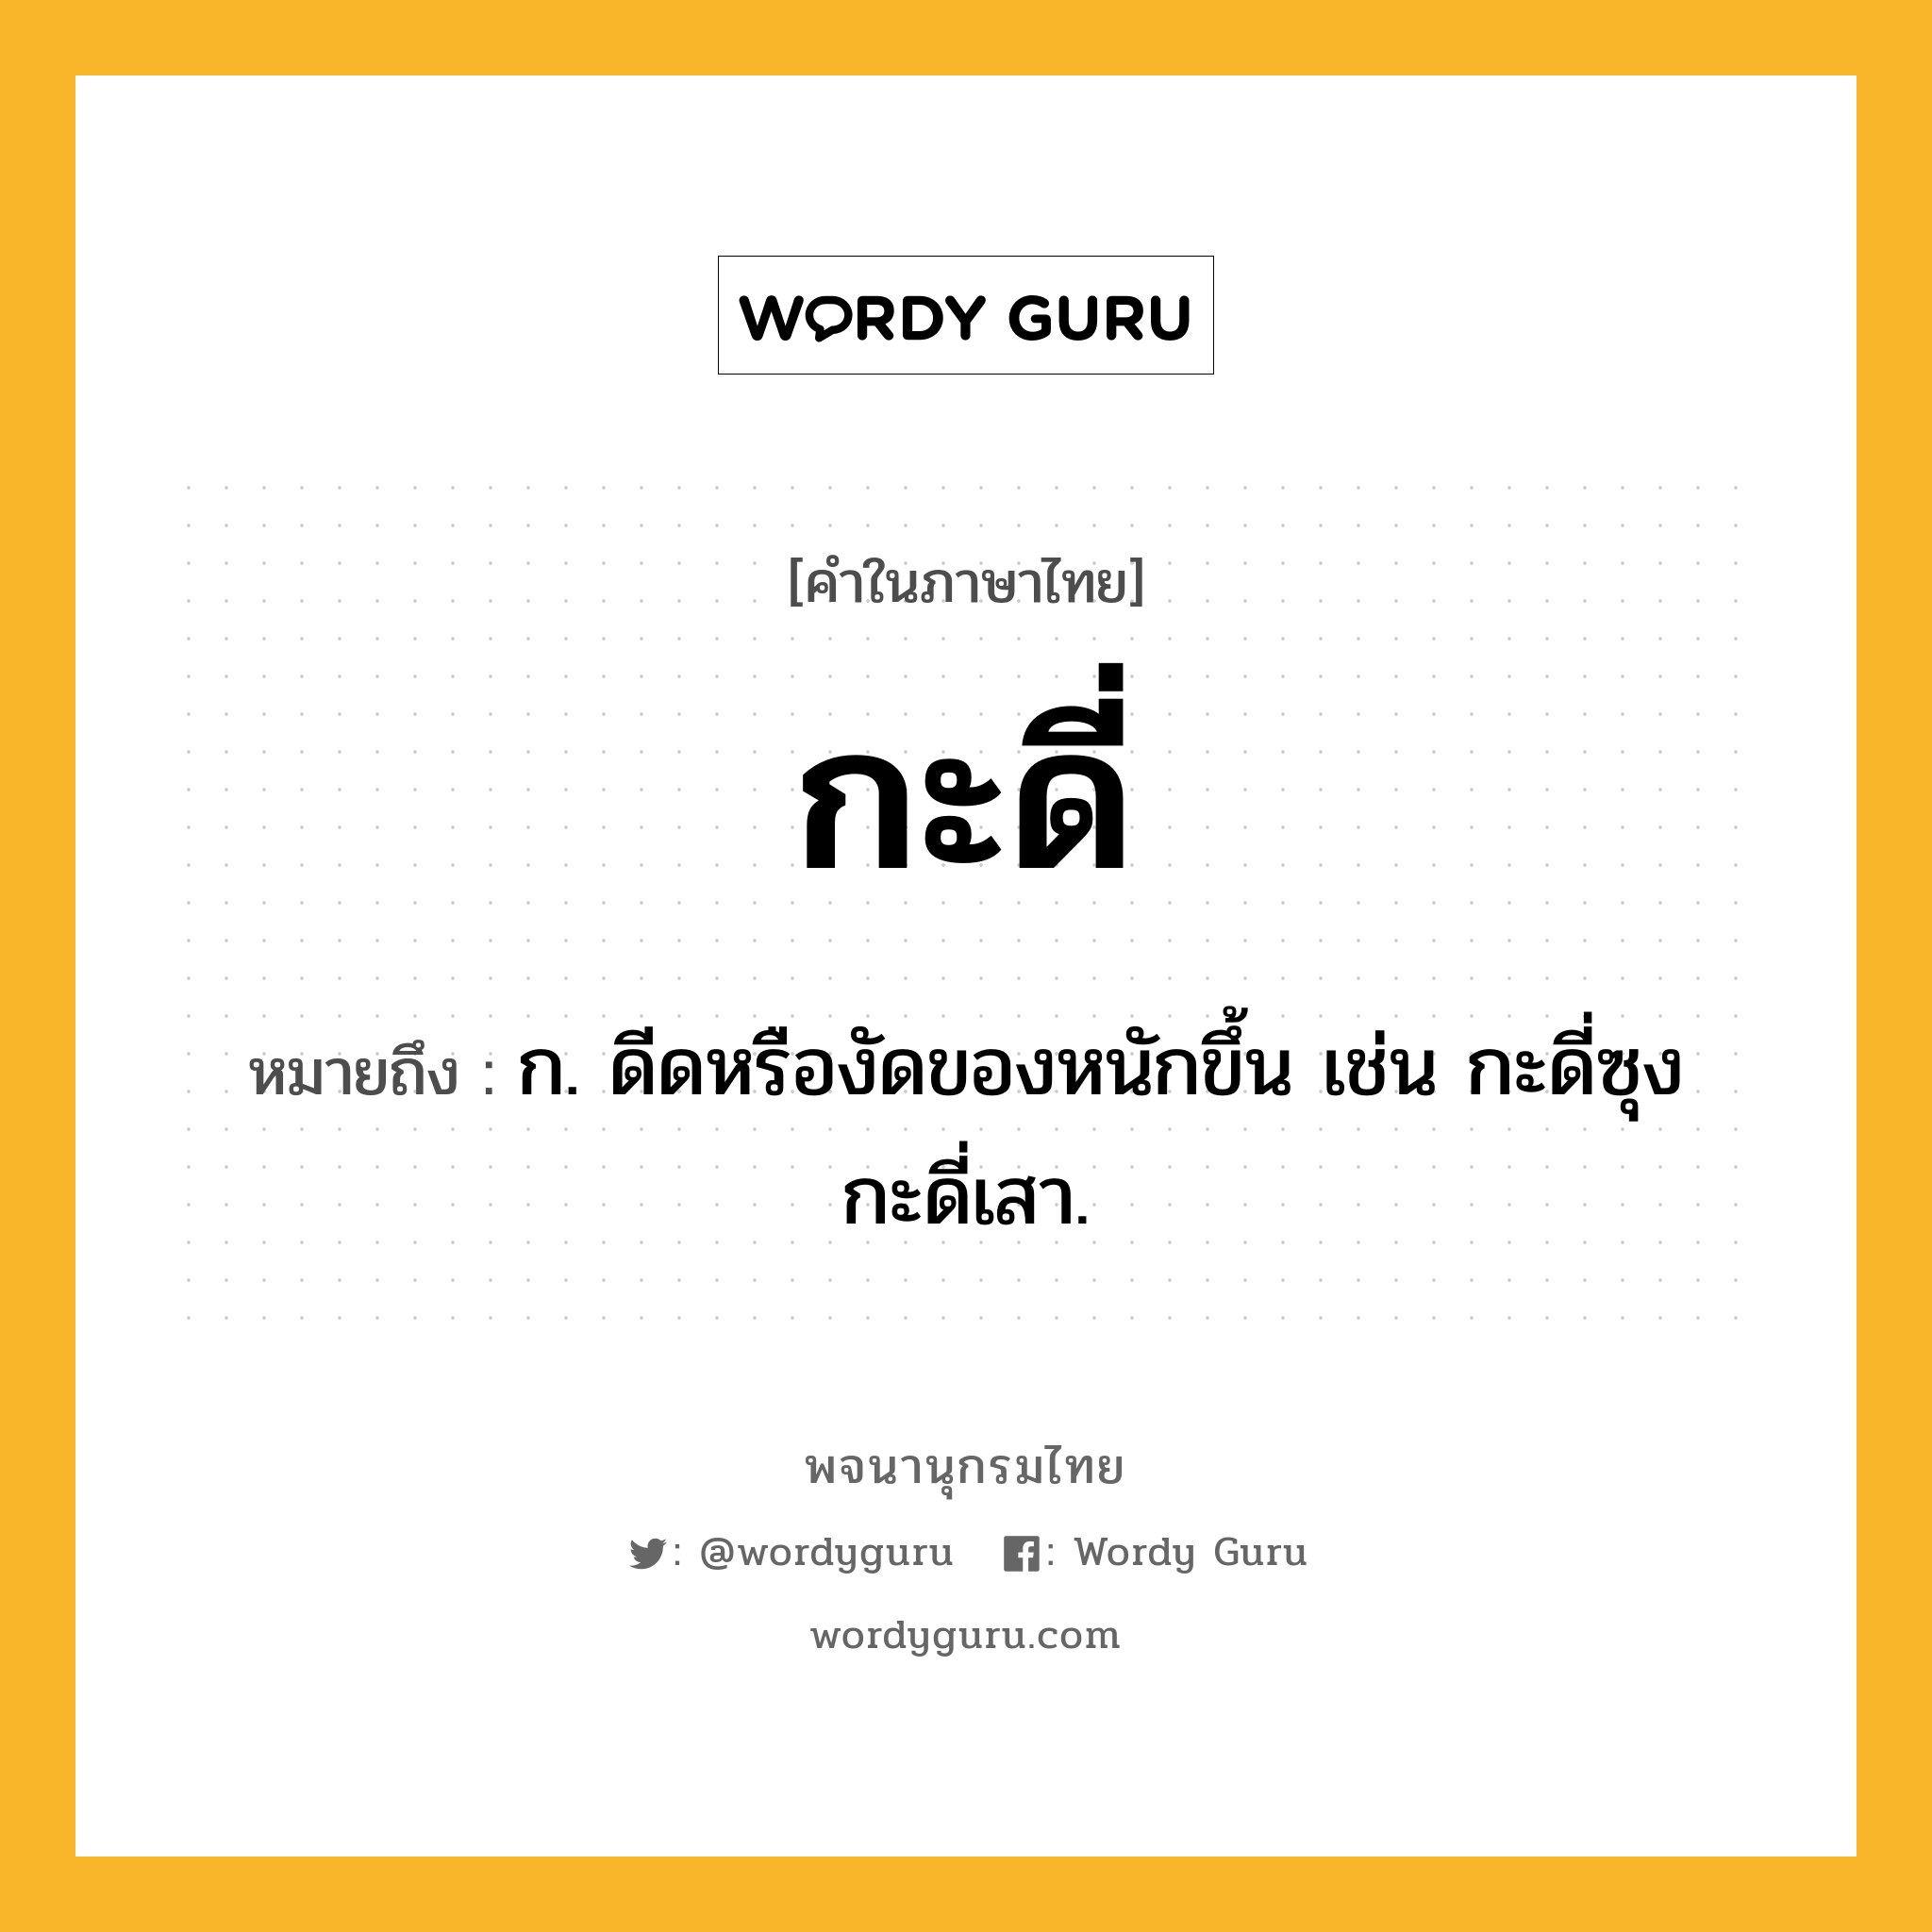 กะดี่ หมายถึงอะไร?, คำในภาษาไทย กะดี่ หมายถึง ก. ดีดหรืองัดของหนักขึ้น เช่น กะดี่ซุง กะดี่เสา.